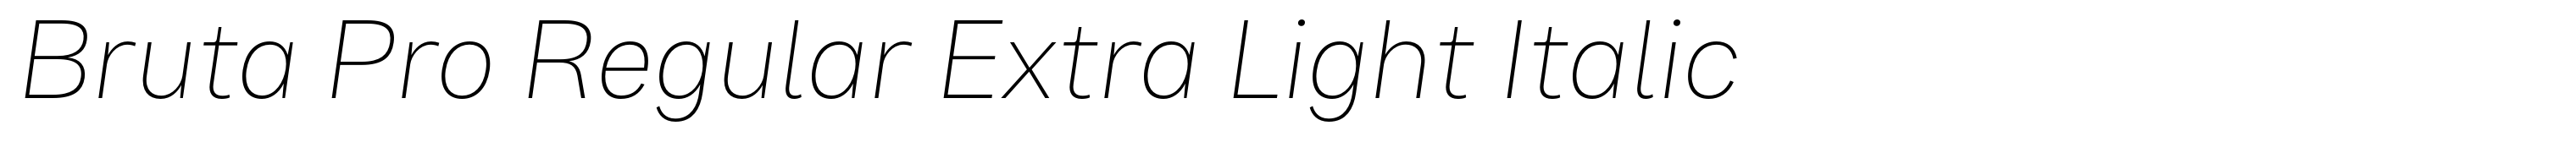 Bruta Pro Regular Extra Light Italic